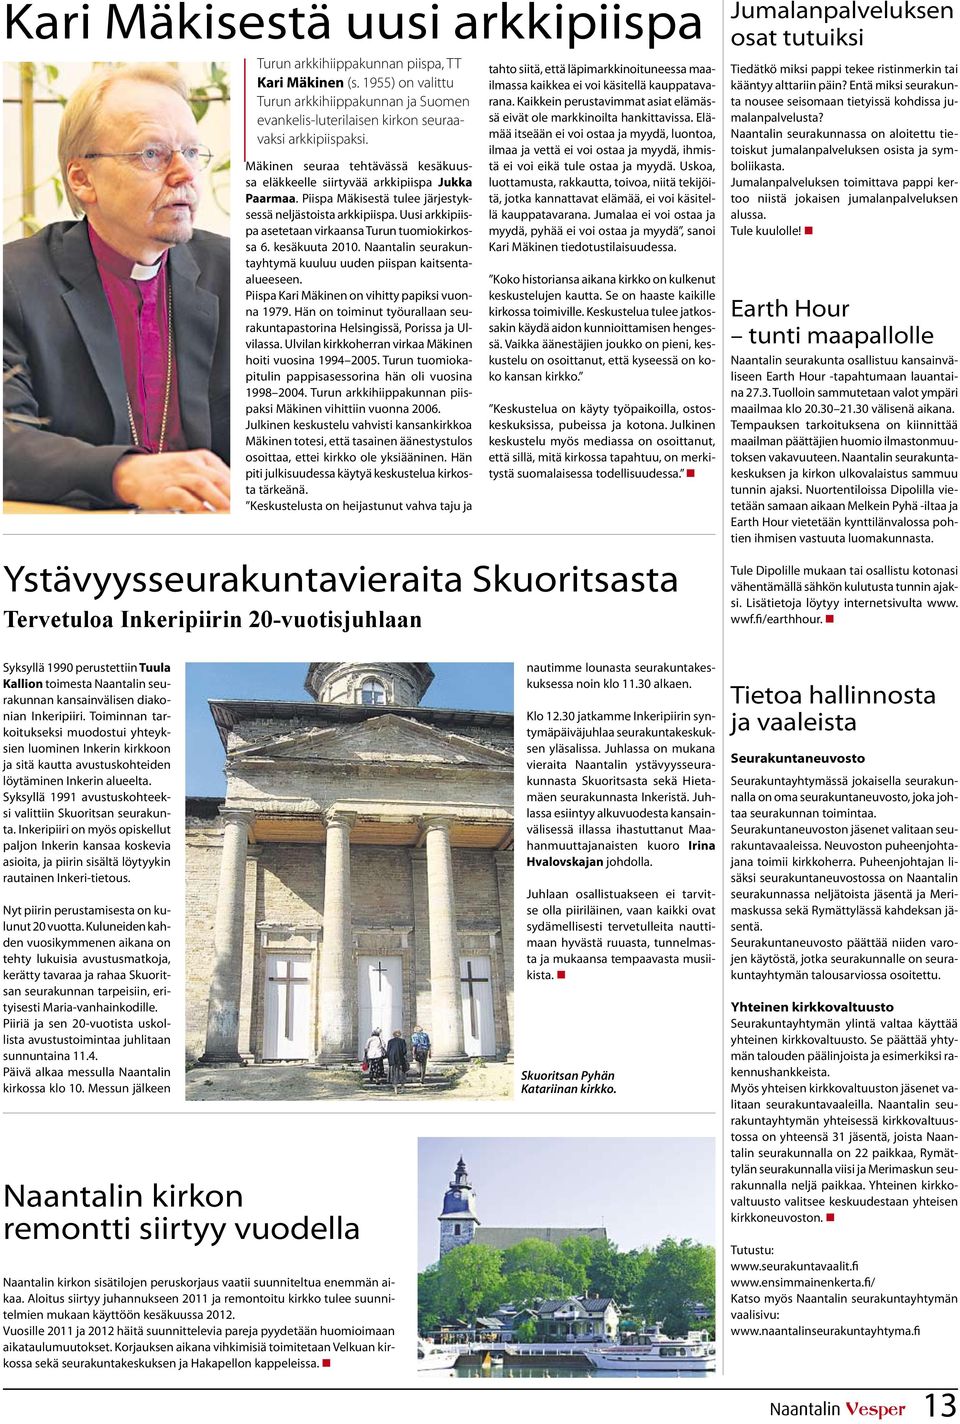 Uusi arkkipiispa asetetaan virkaansa Turun tuomiokirkossa 6. kesäkuuta 2010. Naantalin seurakuntayhtymä kuuluu uuden piispan kaitsentaalueeseen. Piispa Kari Mäkinen on vihitty papiksi vuonna 1979.